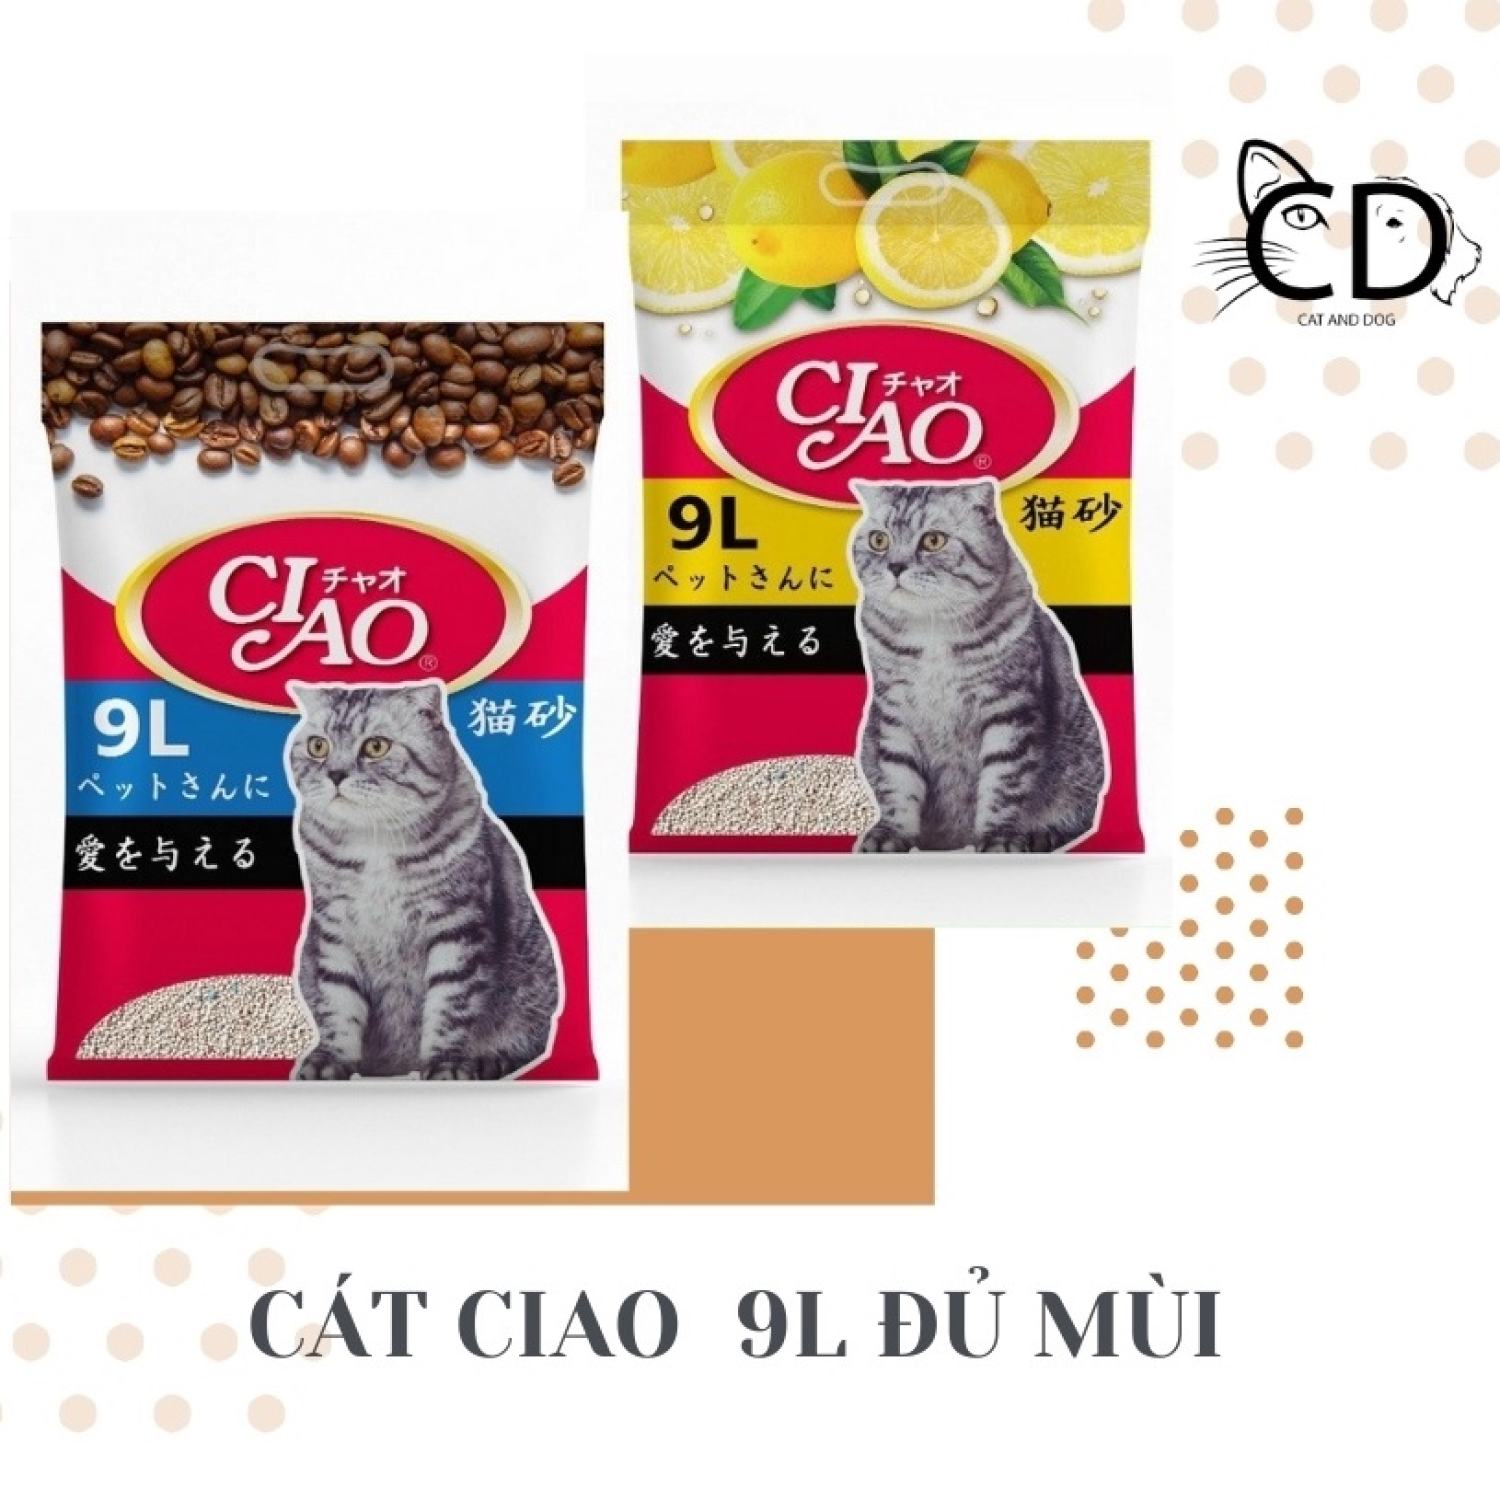 Cát vệ sinh cho mèo Ciao 9L (4Kg)